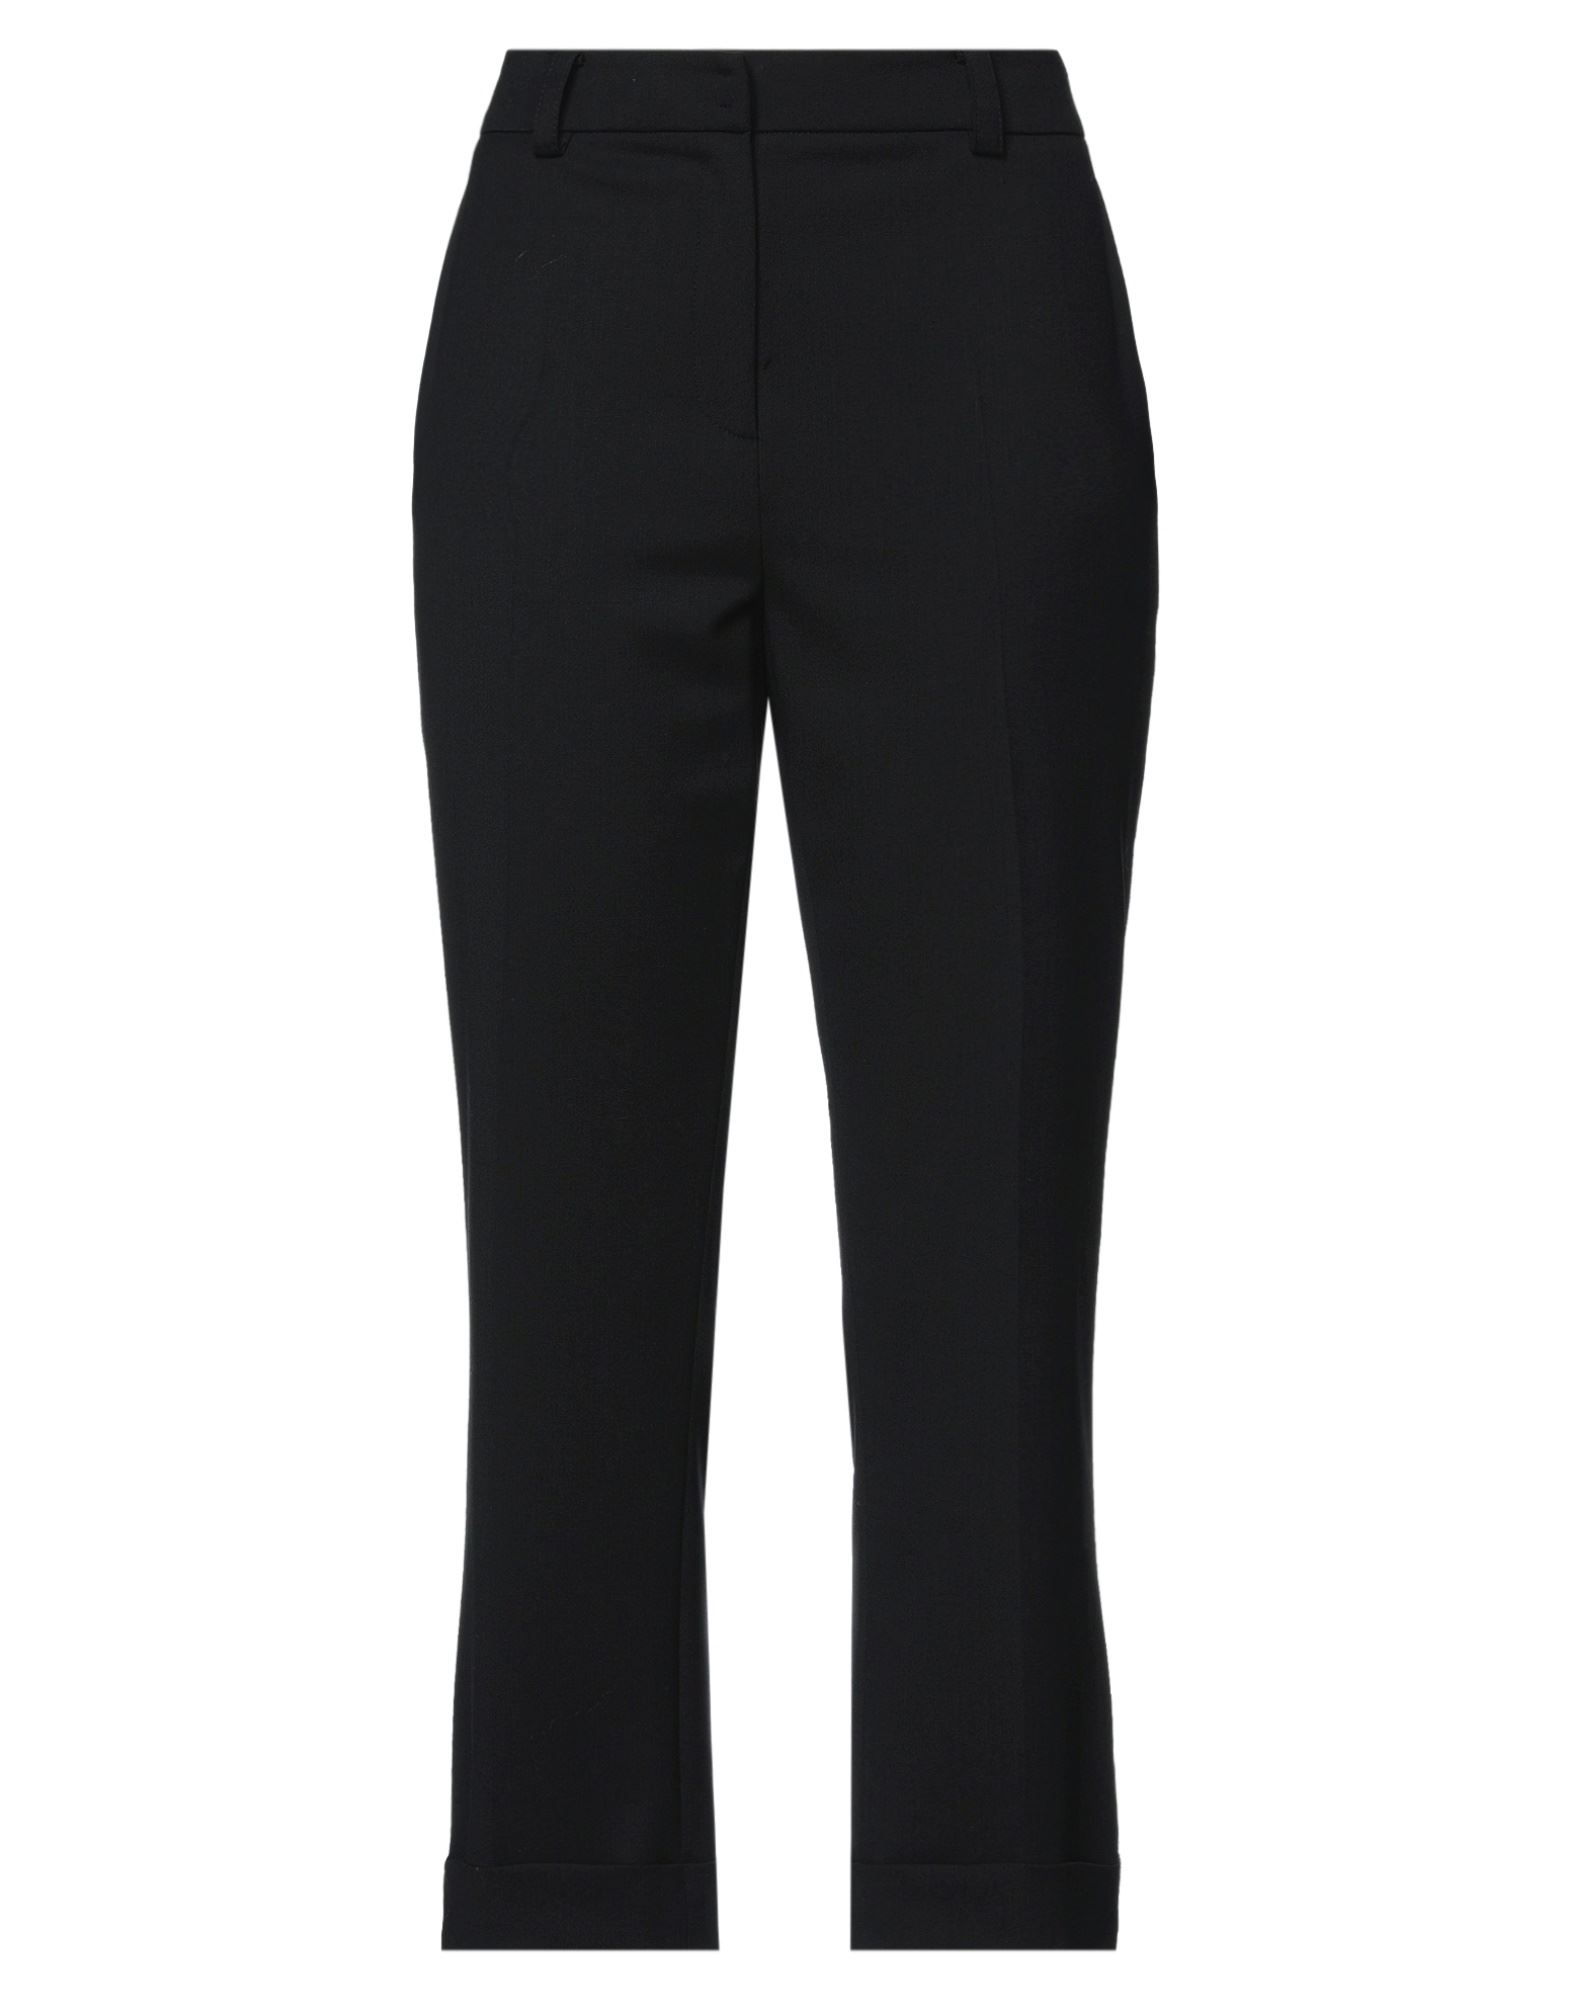 Shop Patrizia Pepe Woman Pants Black Size 8 Polyester, Virgin Wool, Elastane